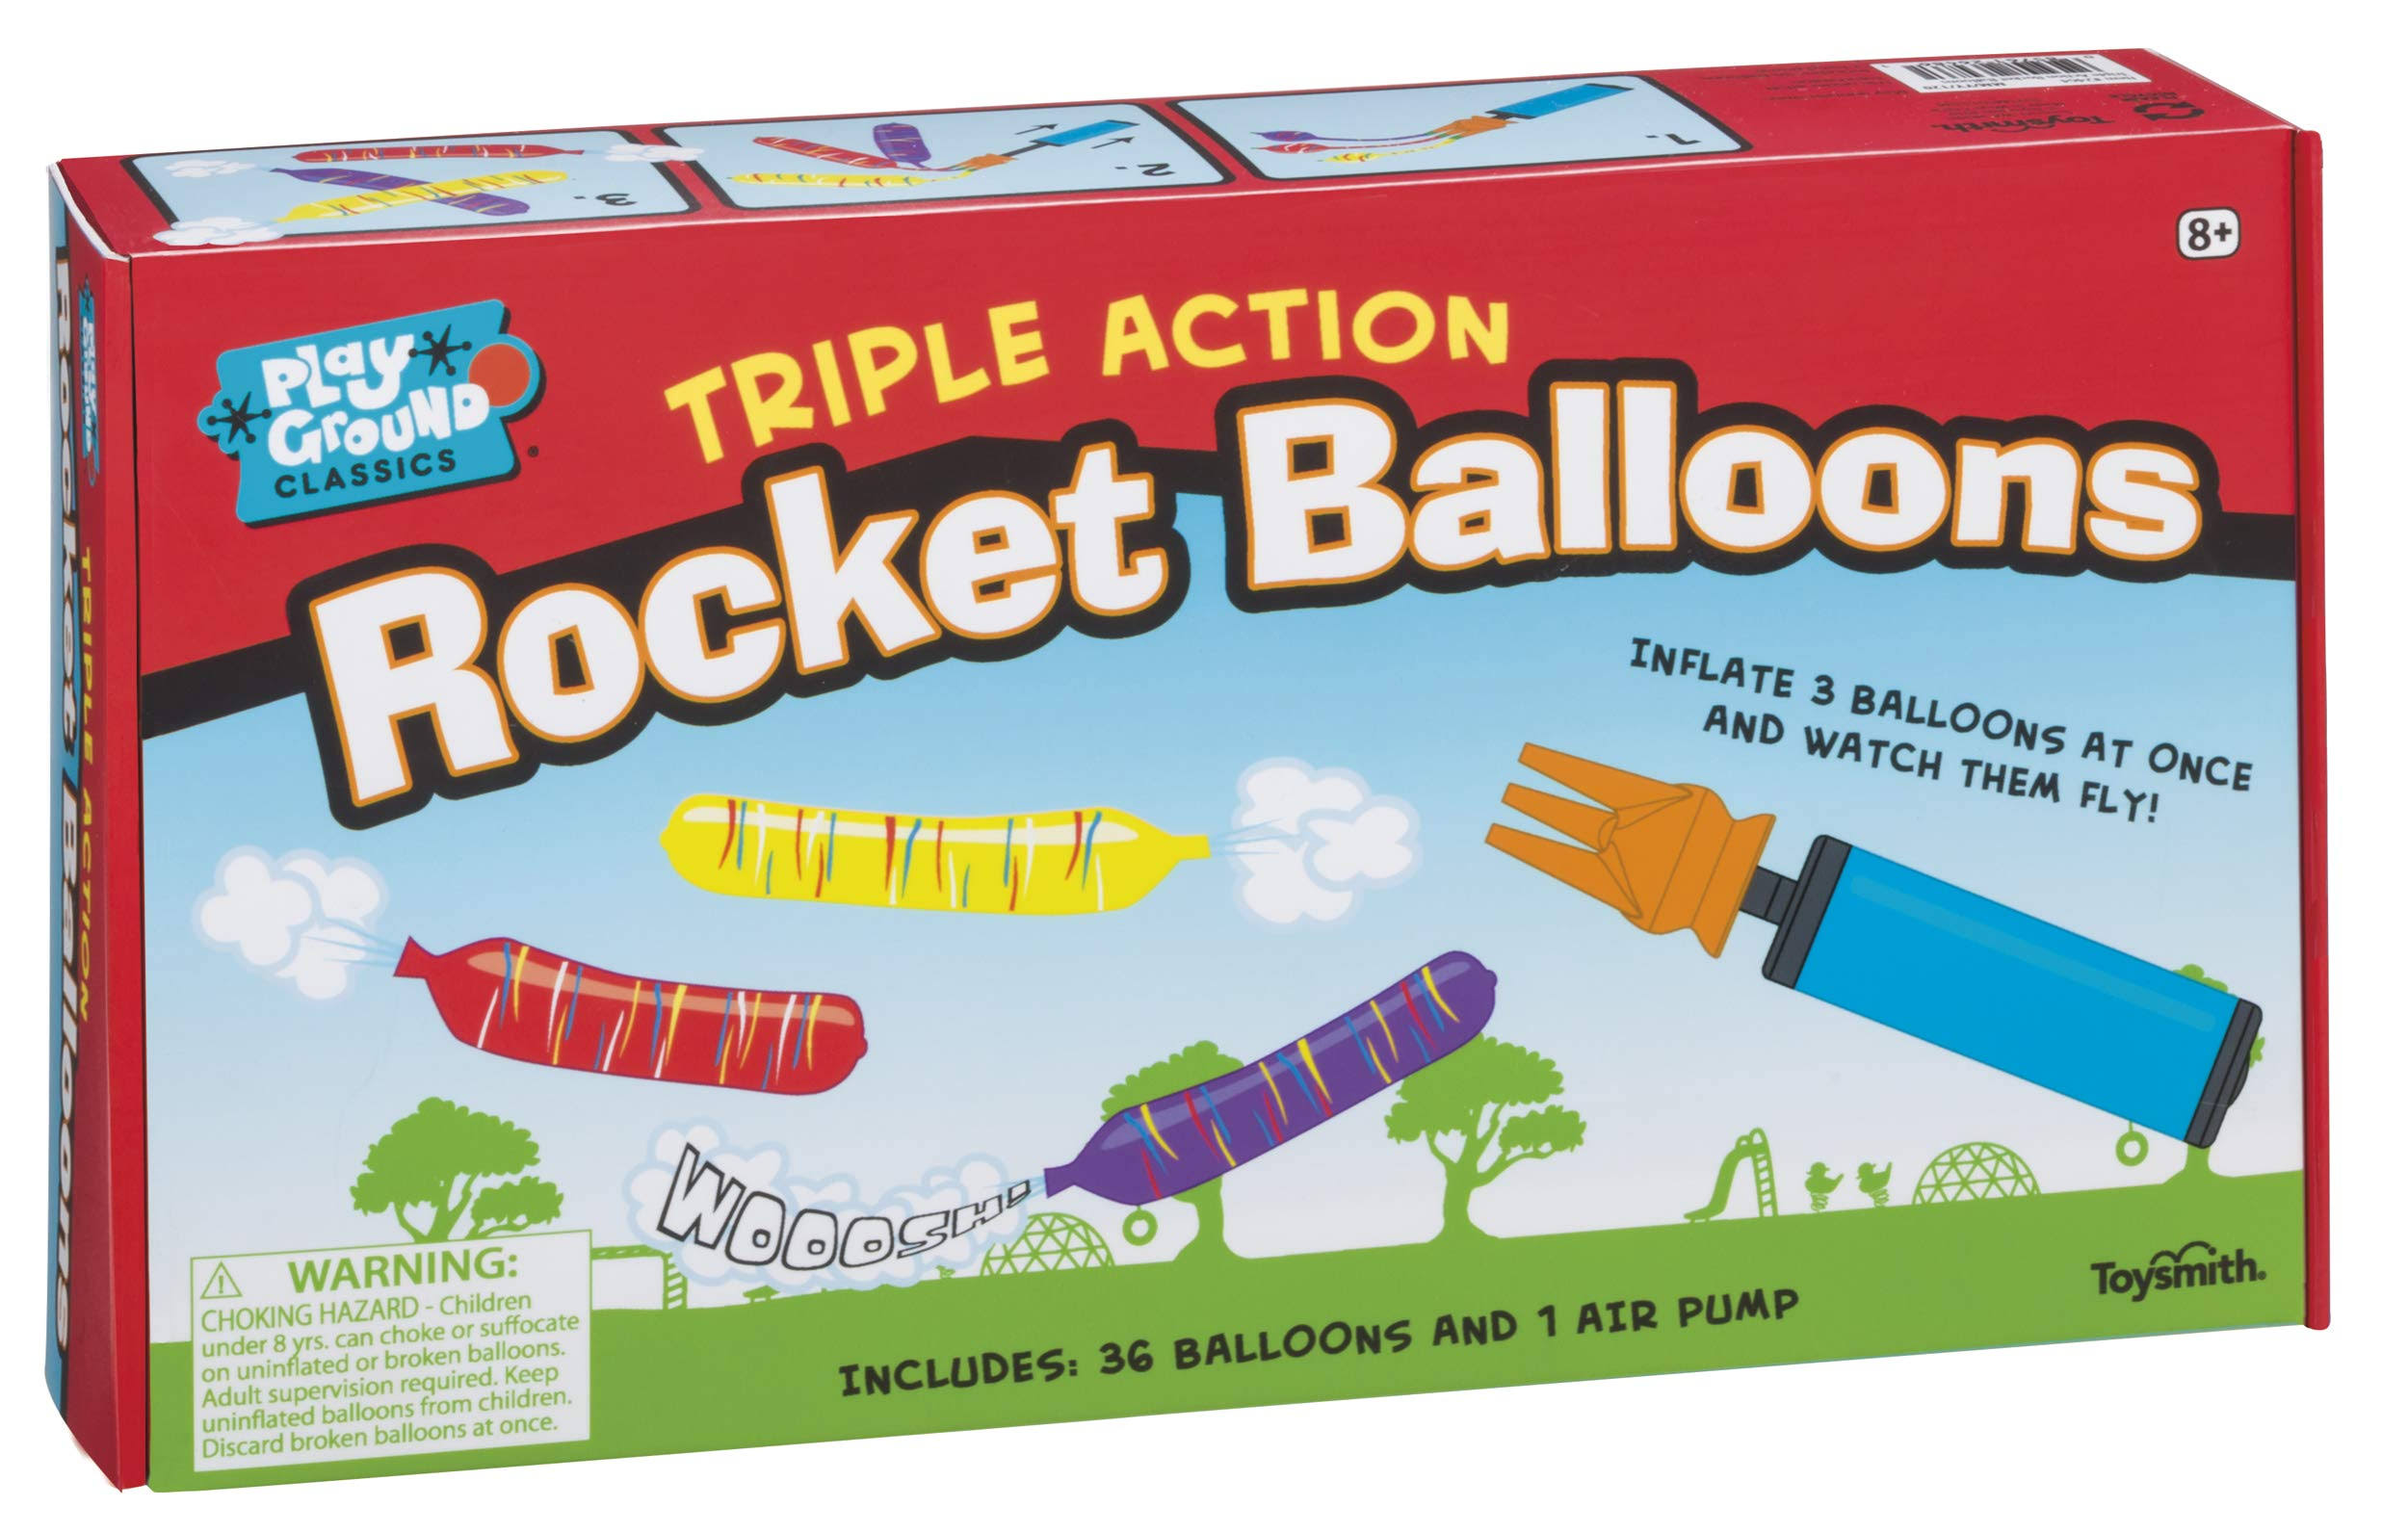 Toysmith Triple Action Rocket Balloon